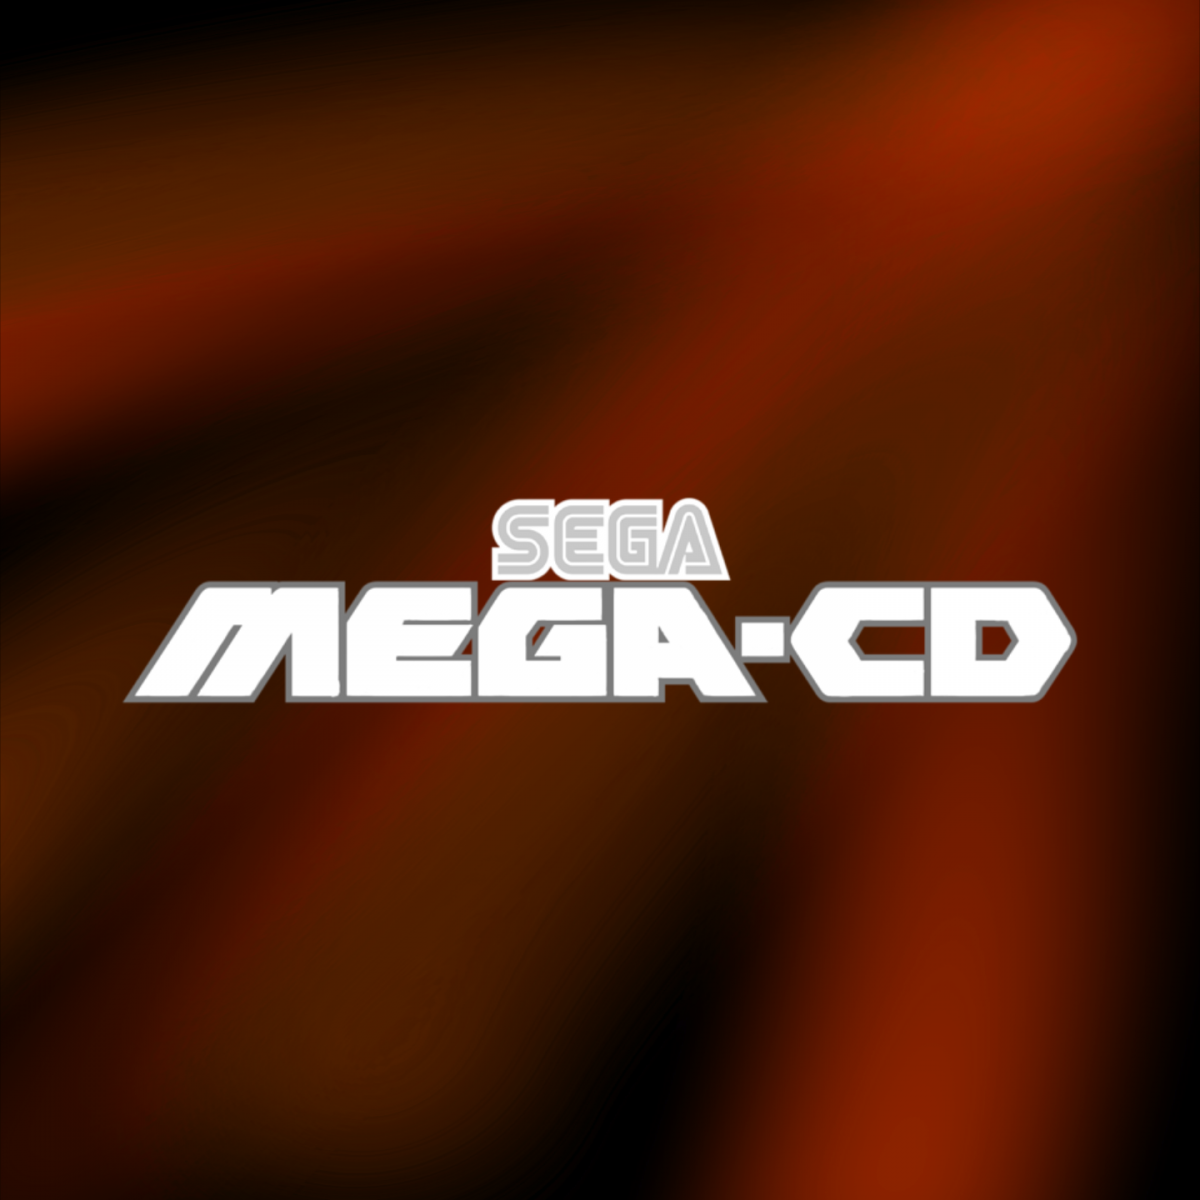 Sega-Mega-CD.png